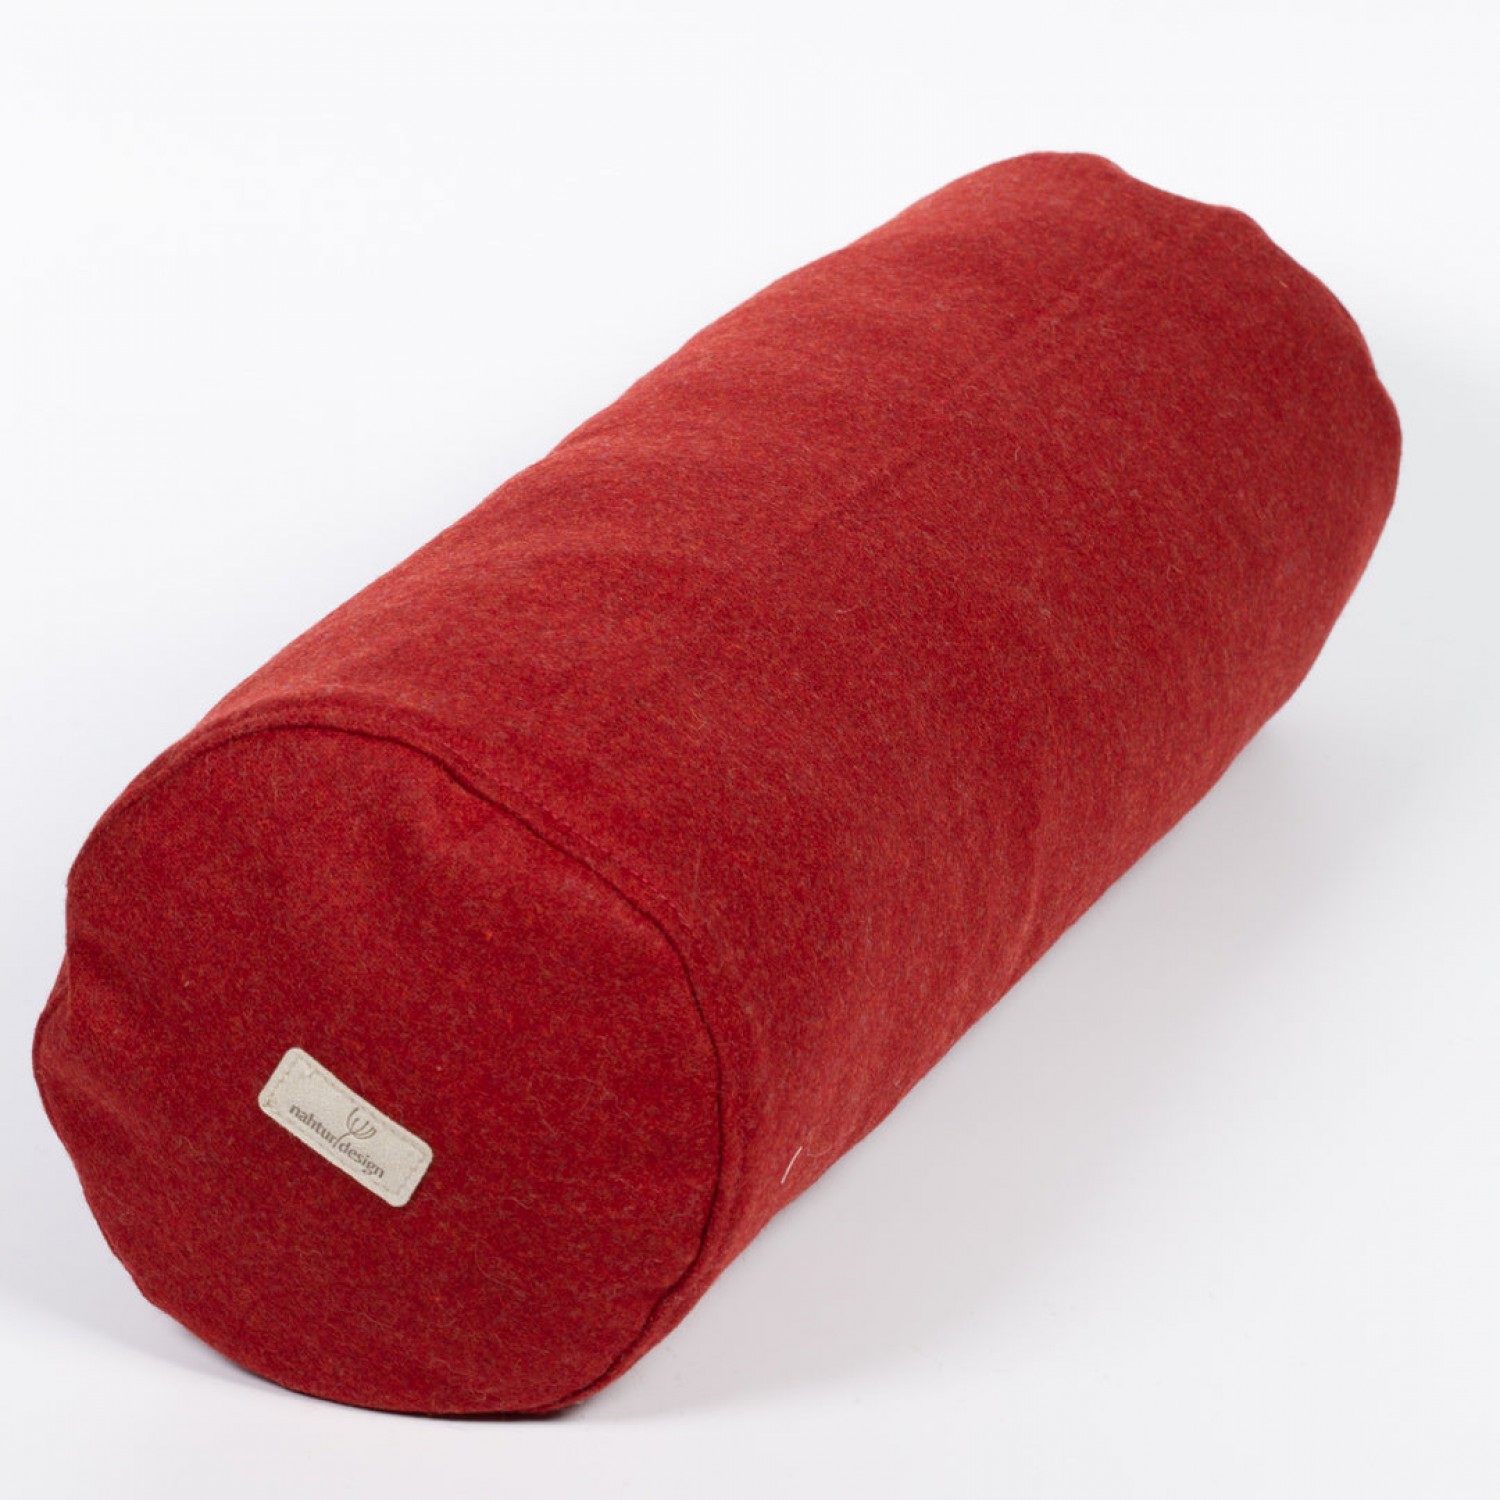 Organic Neck Roll Pillow & Loden Pillowcase » nahtur-design